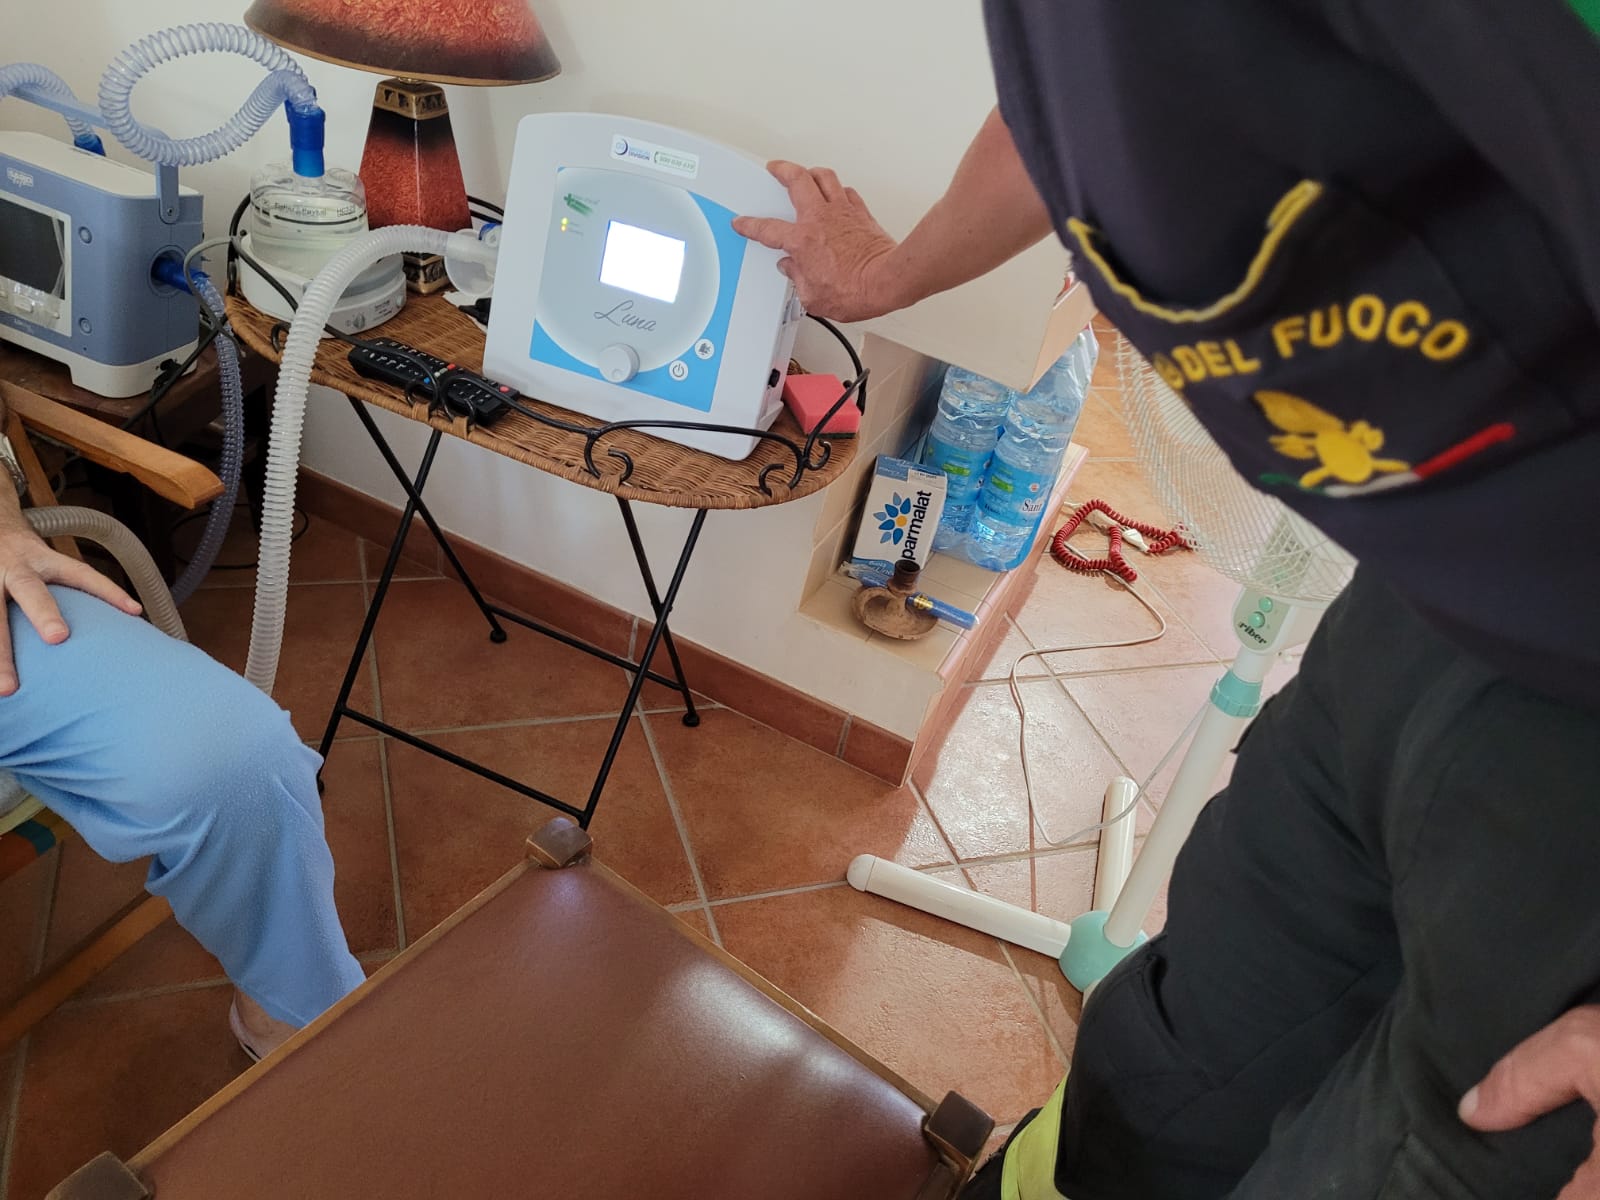 Senza luce rischia di non poter utilizzare il ventilatore meccanico: provvidenziale intervento dei vigili del fuoco a Marsala